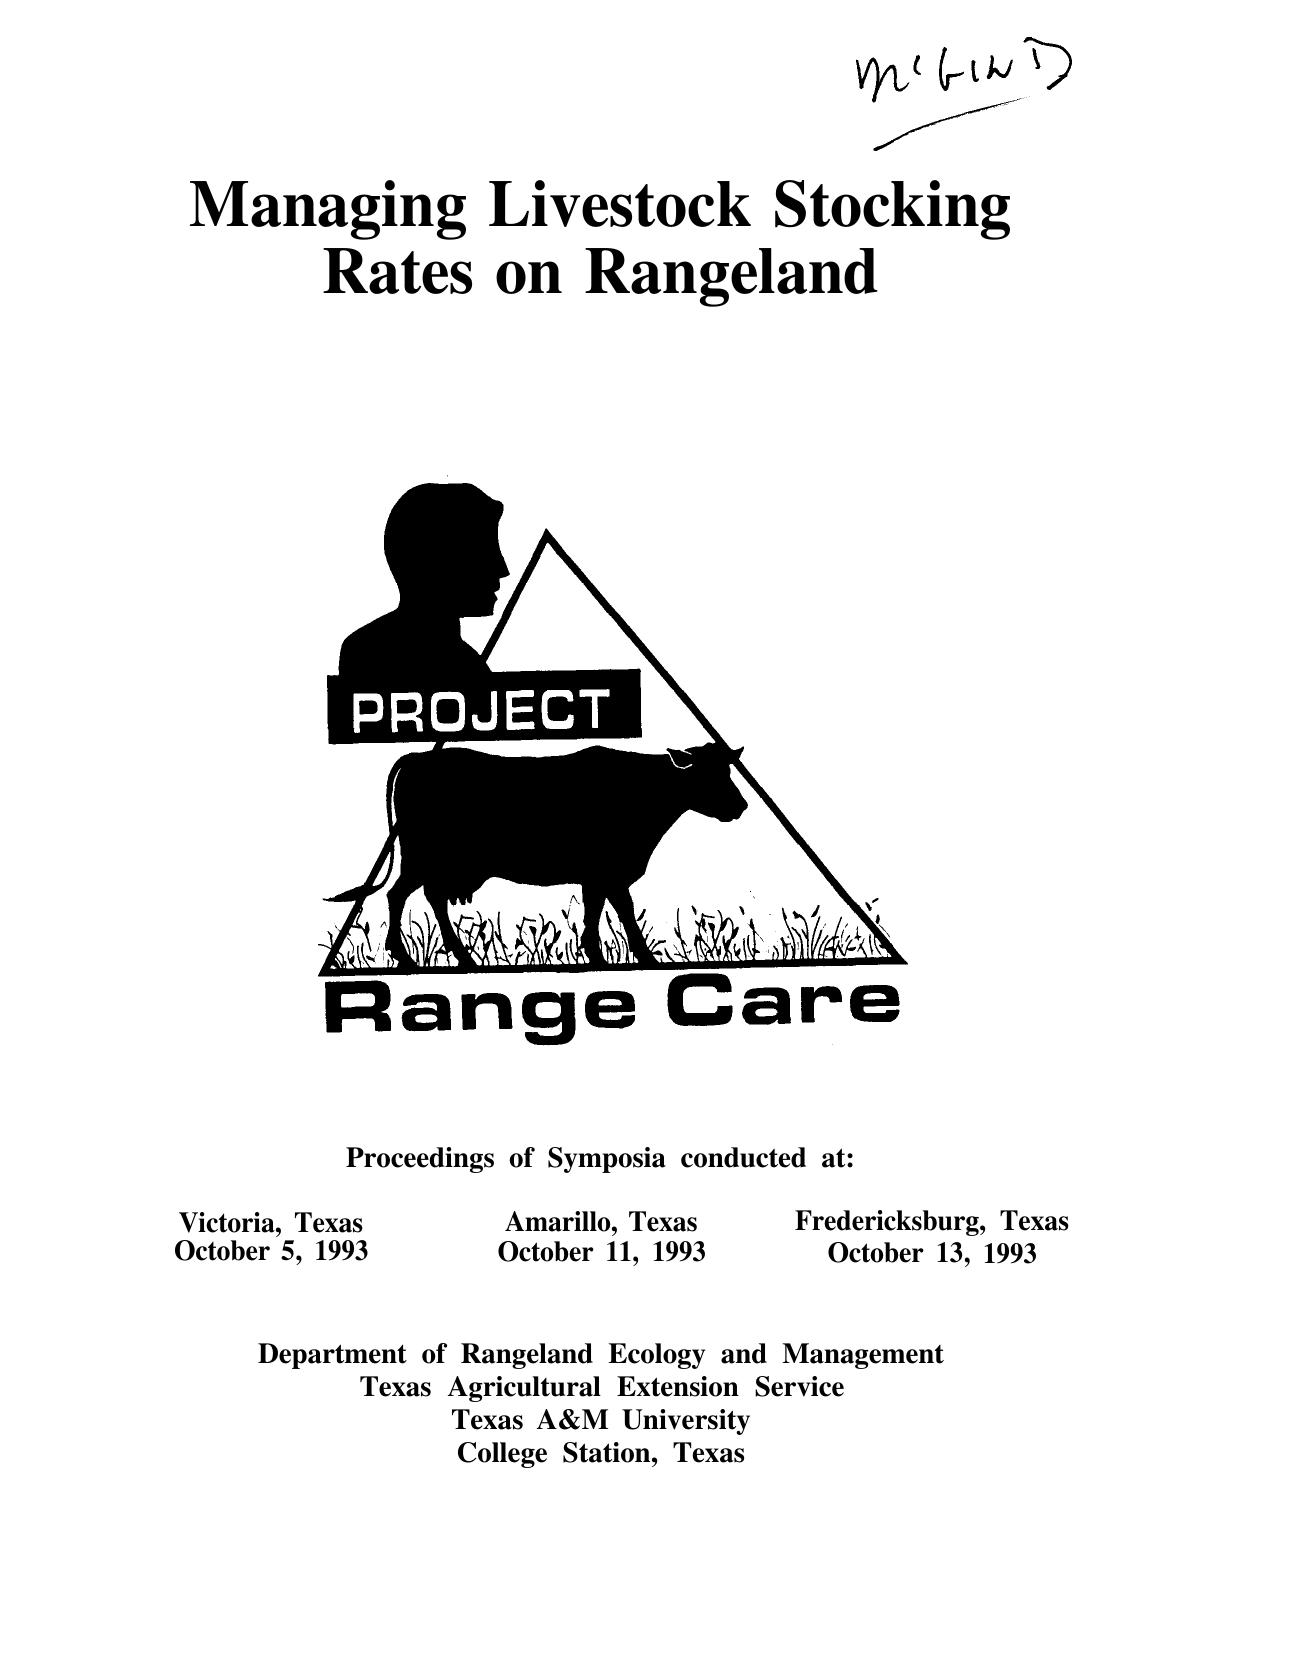 Managing livestock stocking rates on rangeland